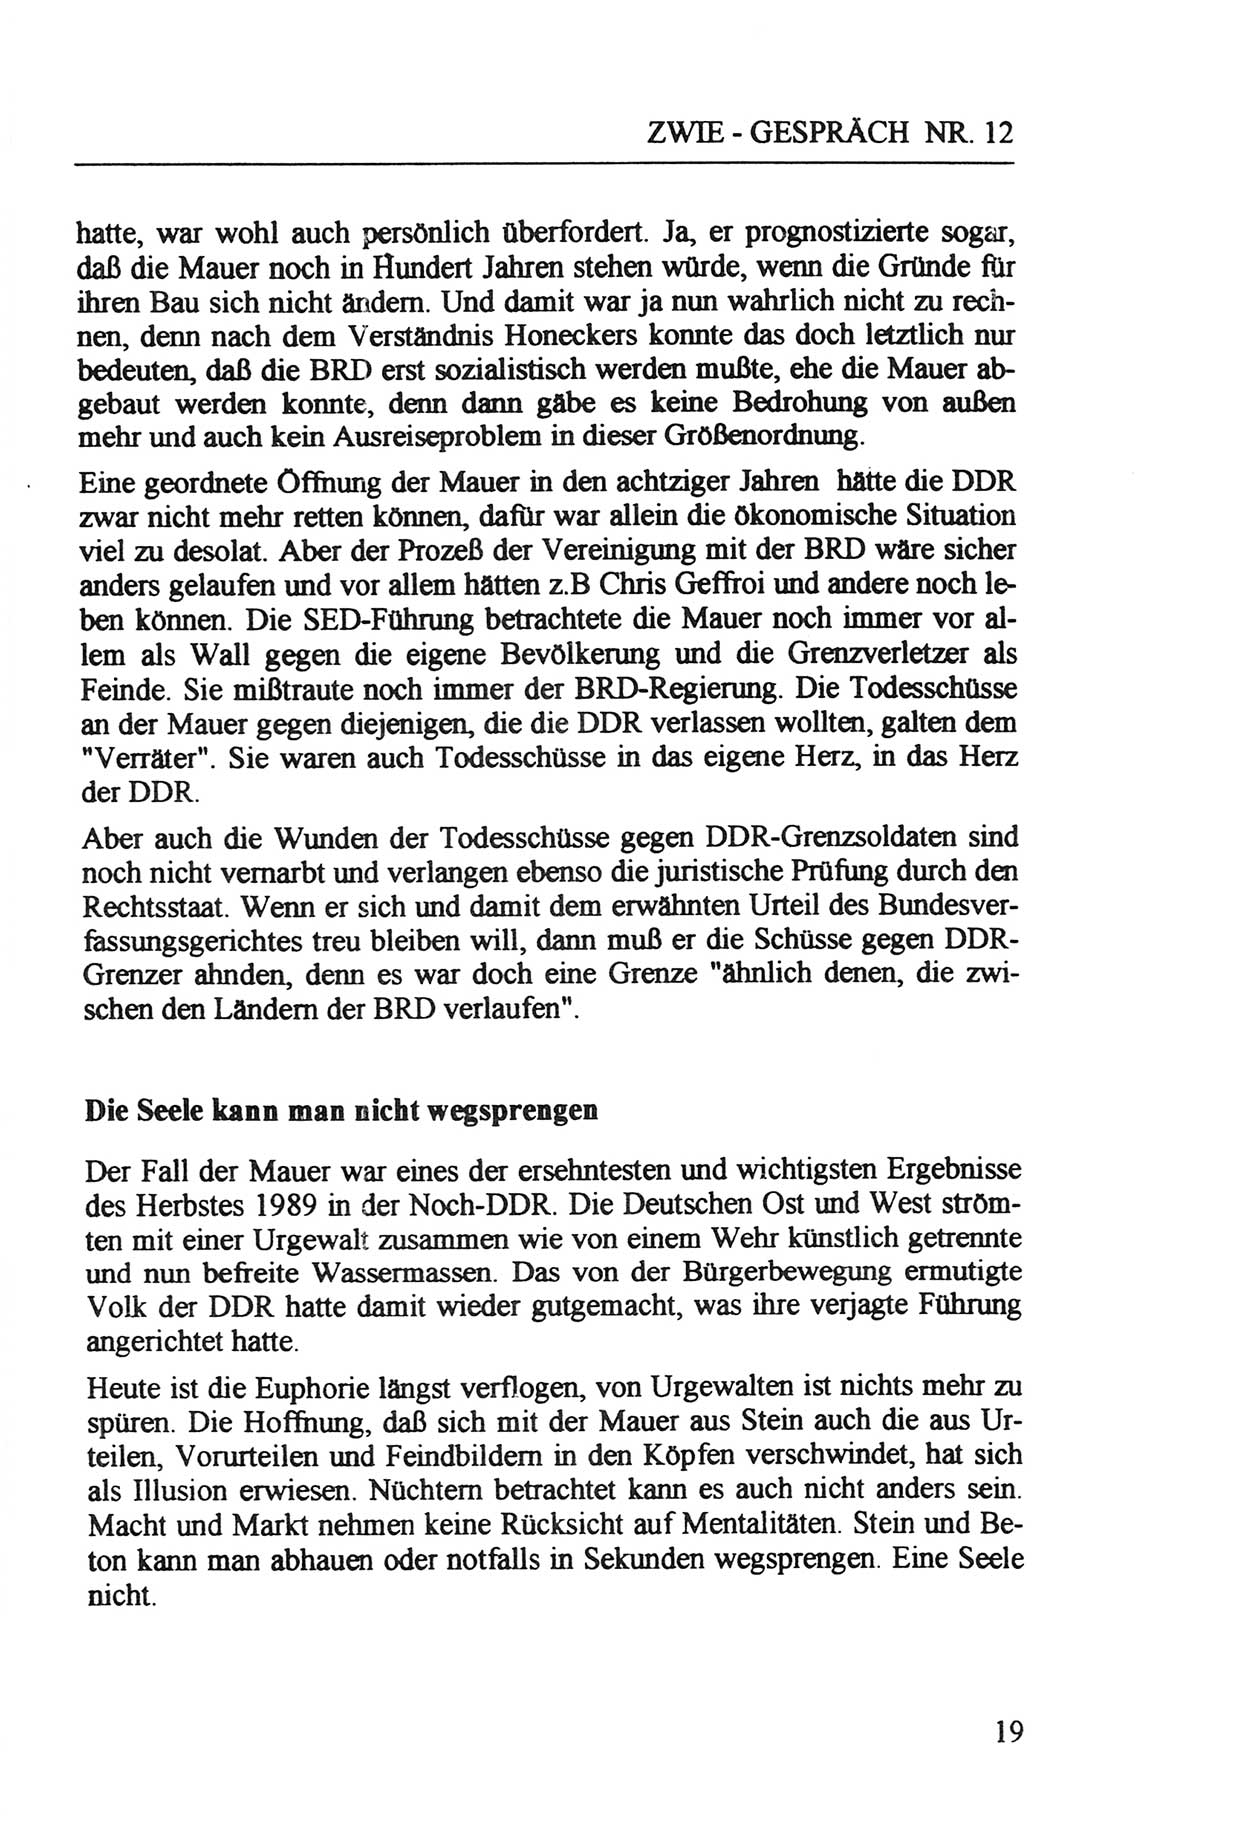 Zwie-Gespräch, Beiträge zur Aufarbeitung der Staatssicherheits-Vergangenheit [Deutsche Demokratische Republik (DDR)], Ausgabe Nr. 12, Berlin 1993, Seite 19 (Zwie-Gespr. Ausg. 12 1993, S. 19)